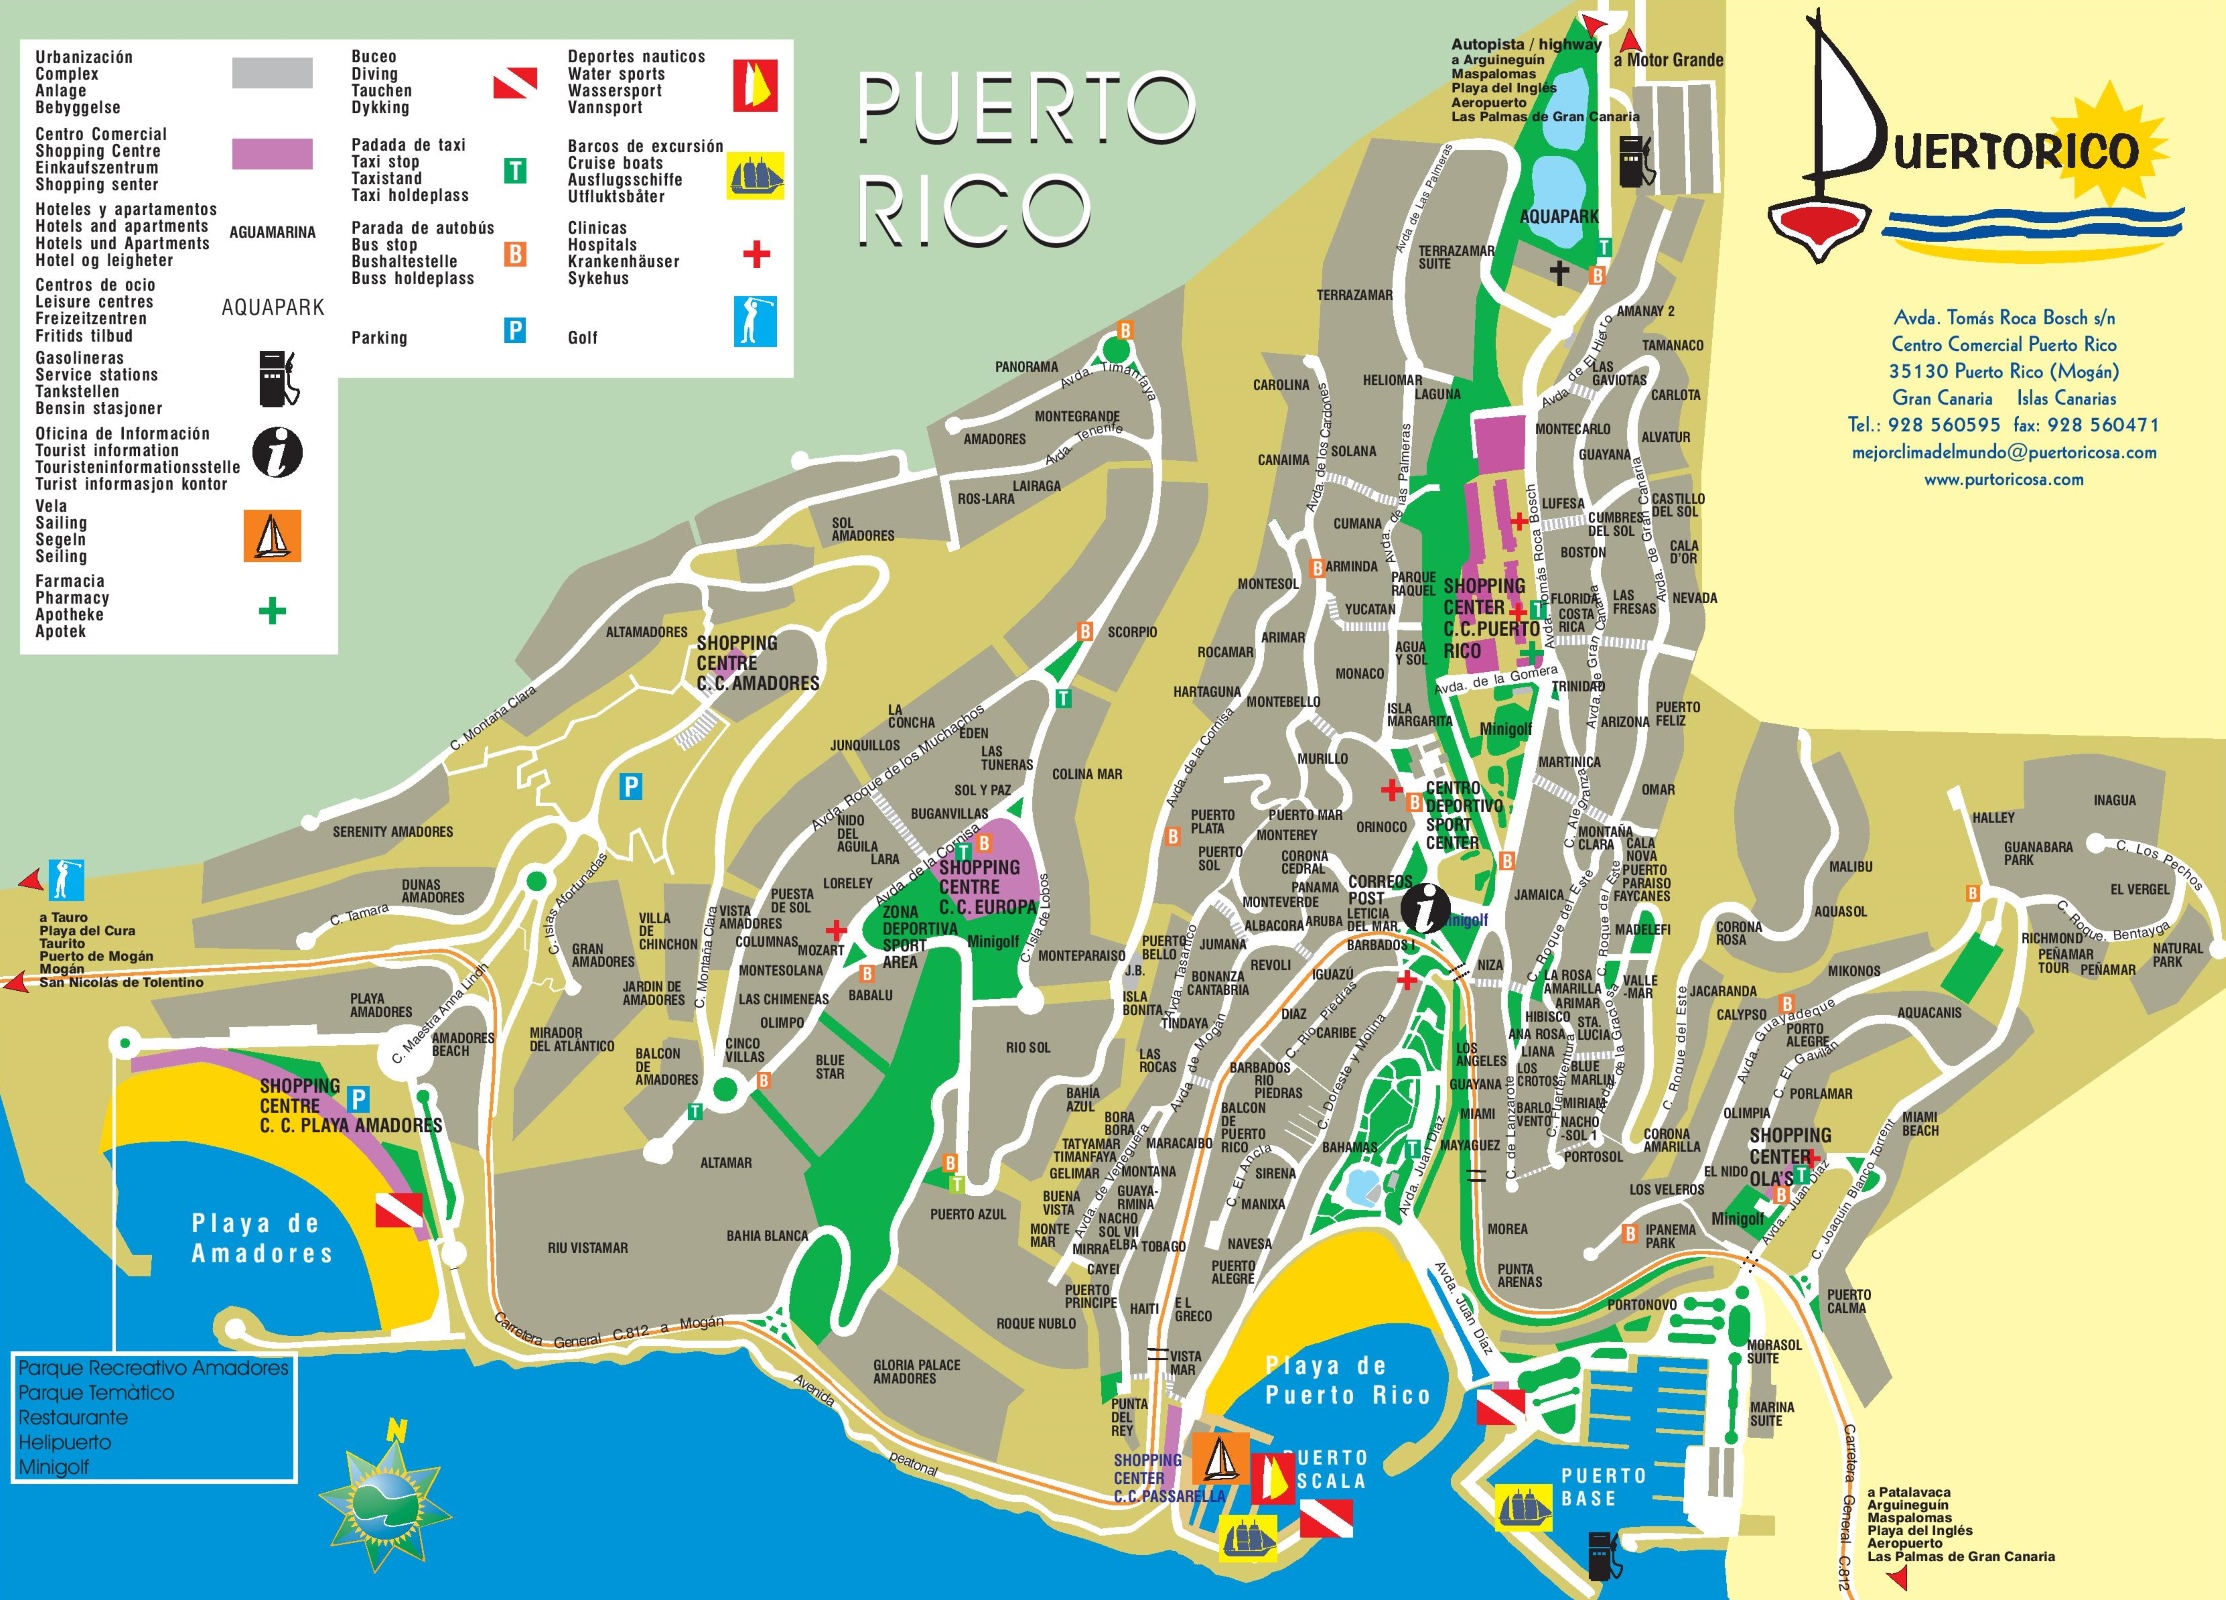 Puerto Rico de Gran Canaria hotel map